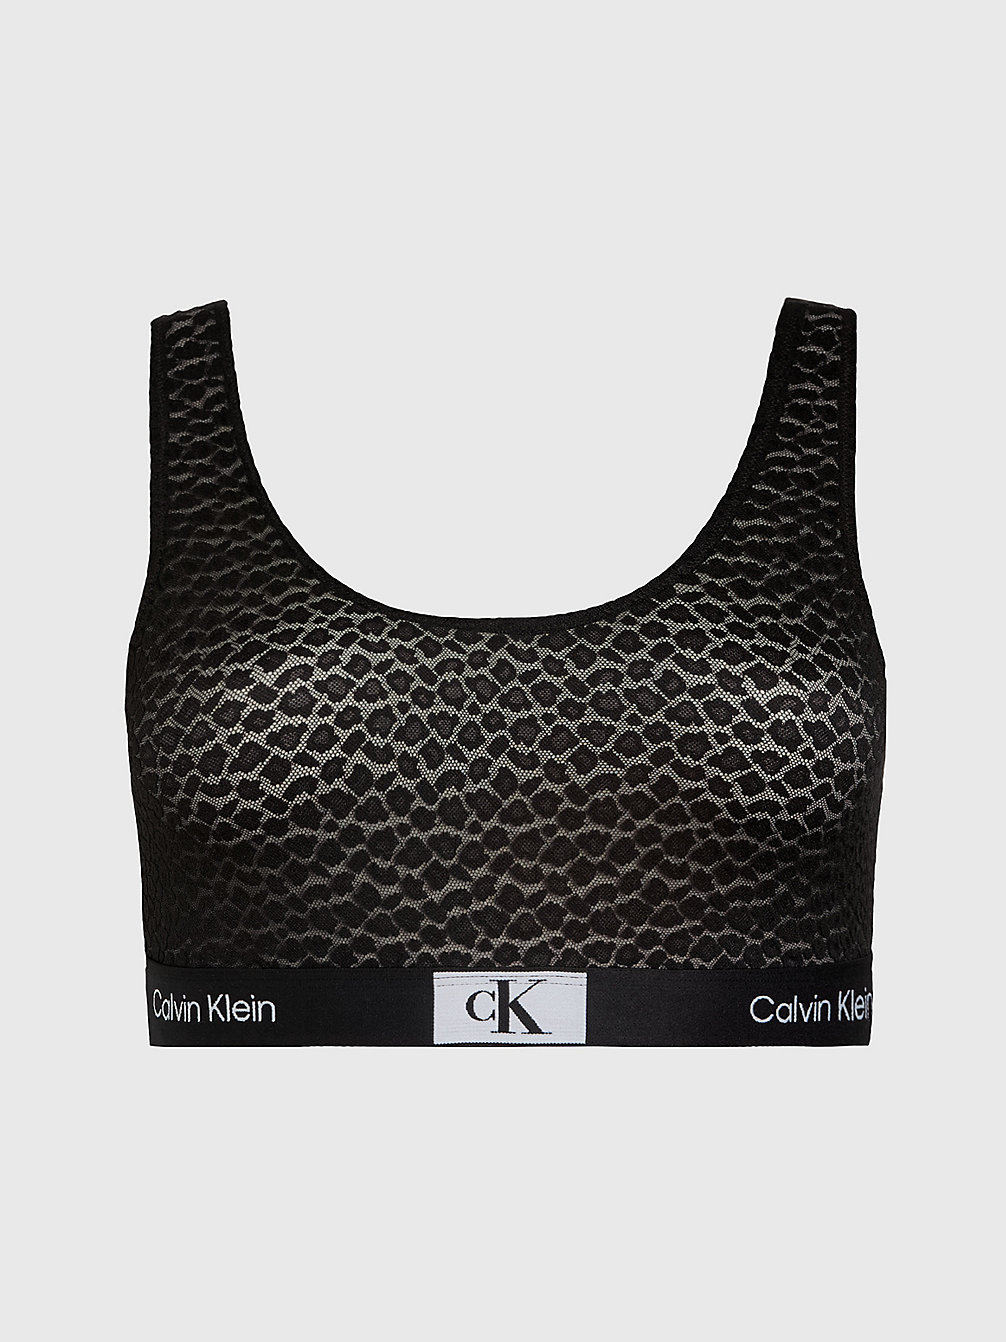 Brassière Grande Taille - Ck96 > BLACK > undefined femmes > Calvin Klein